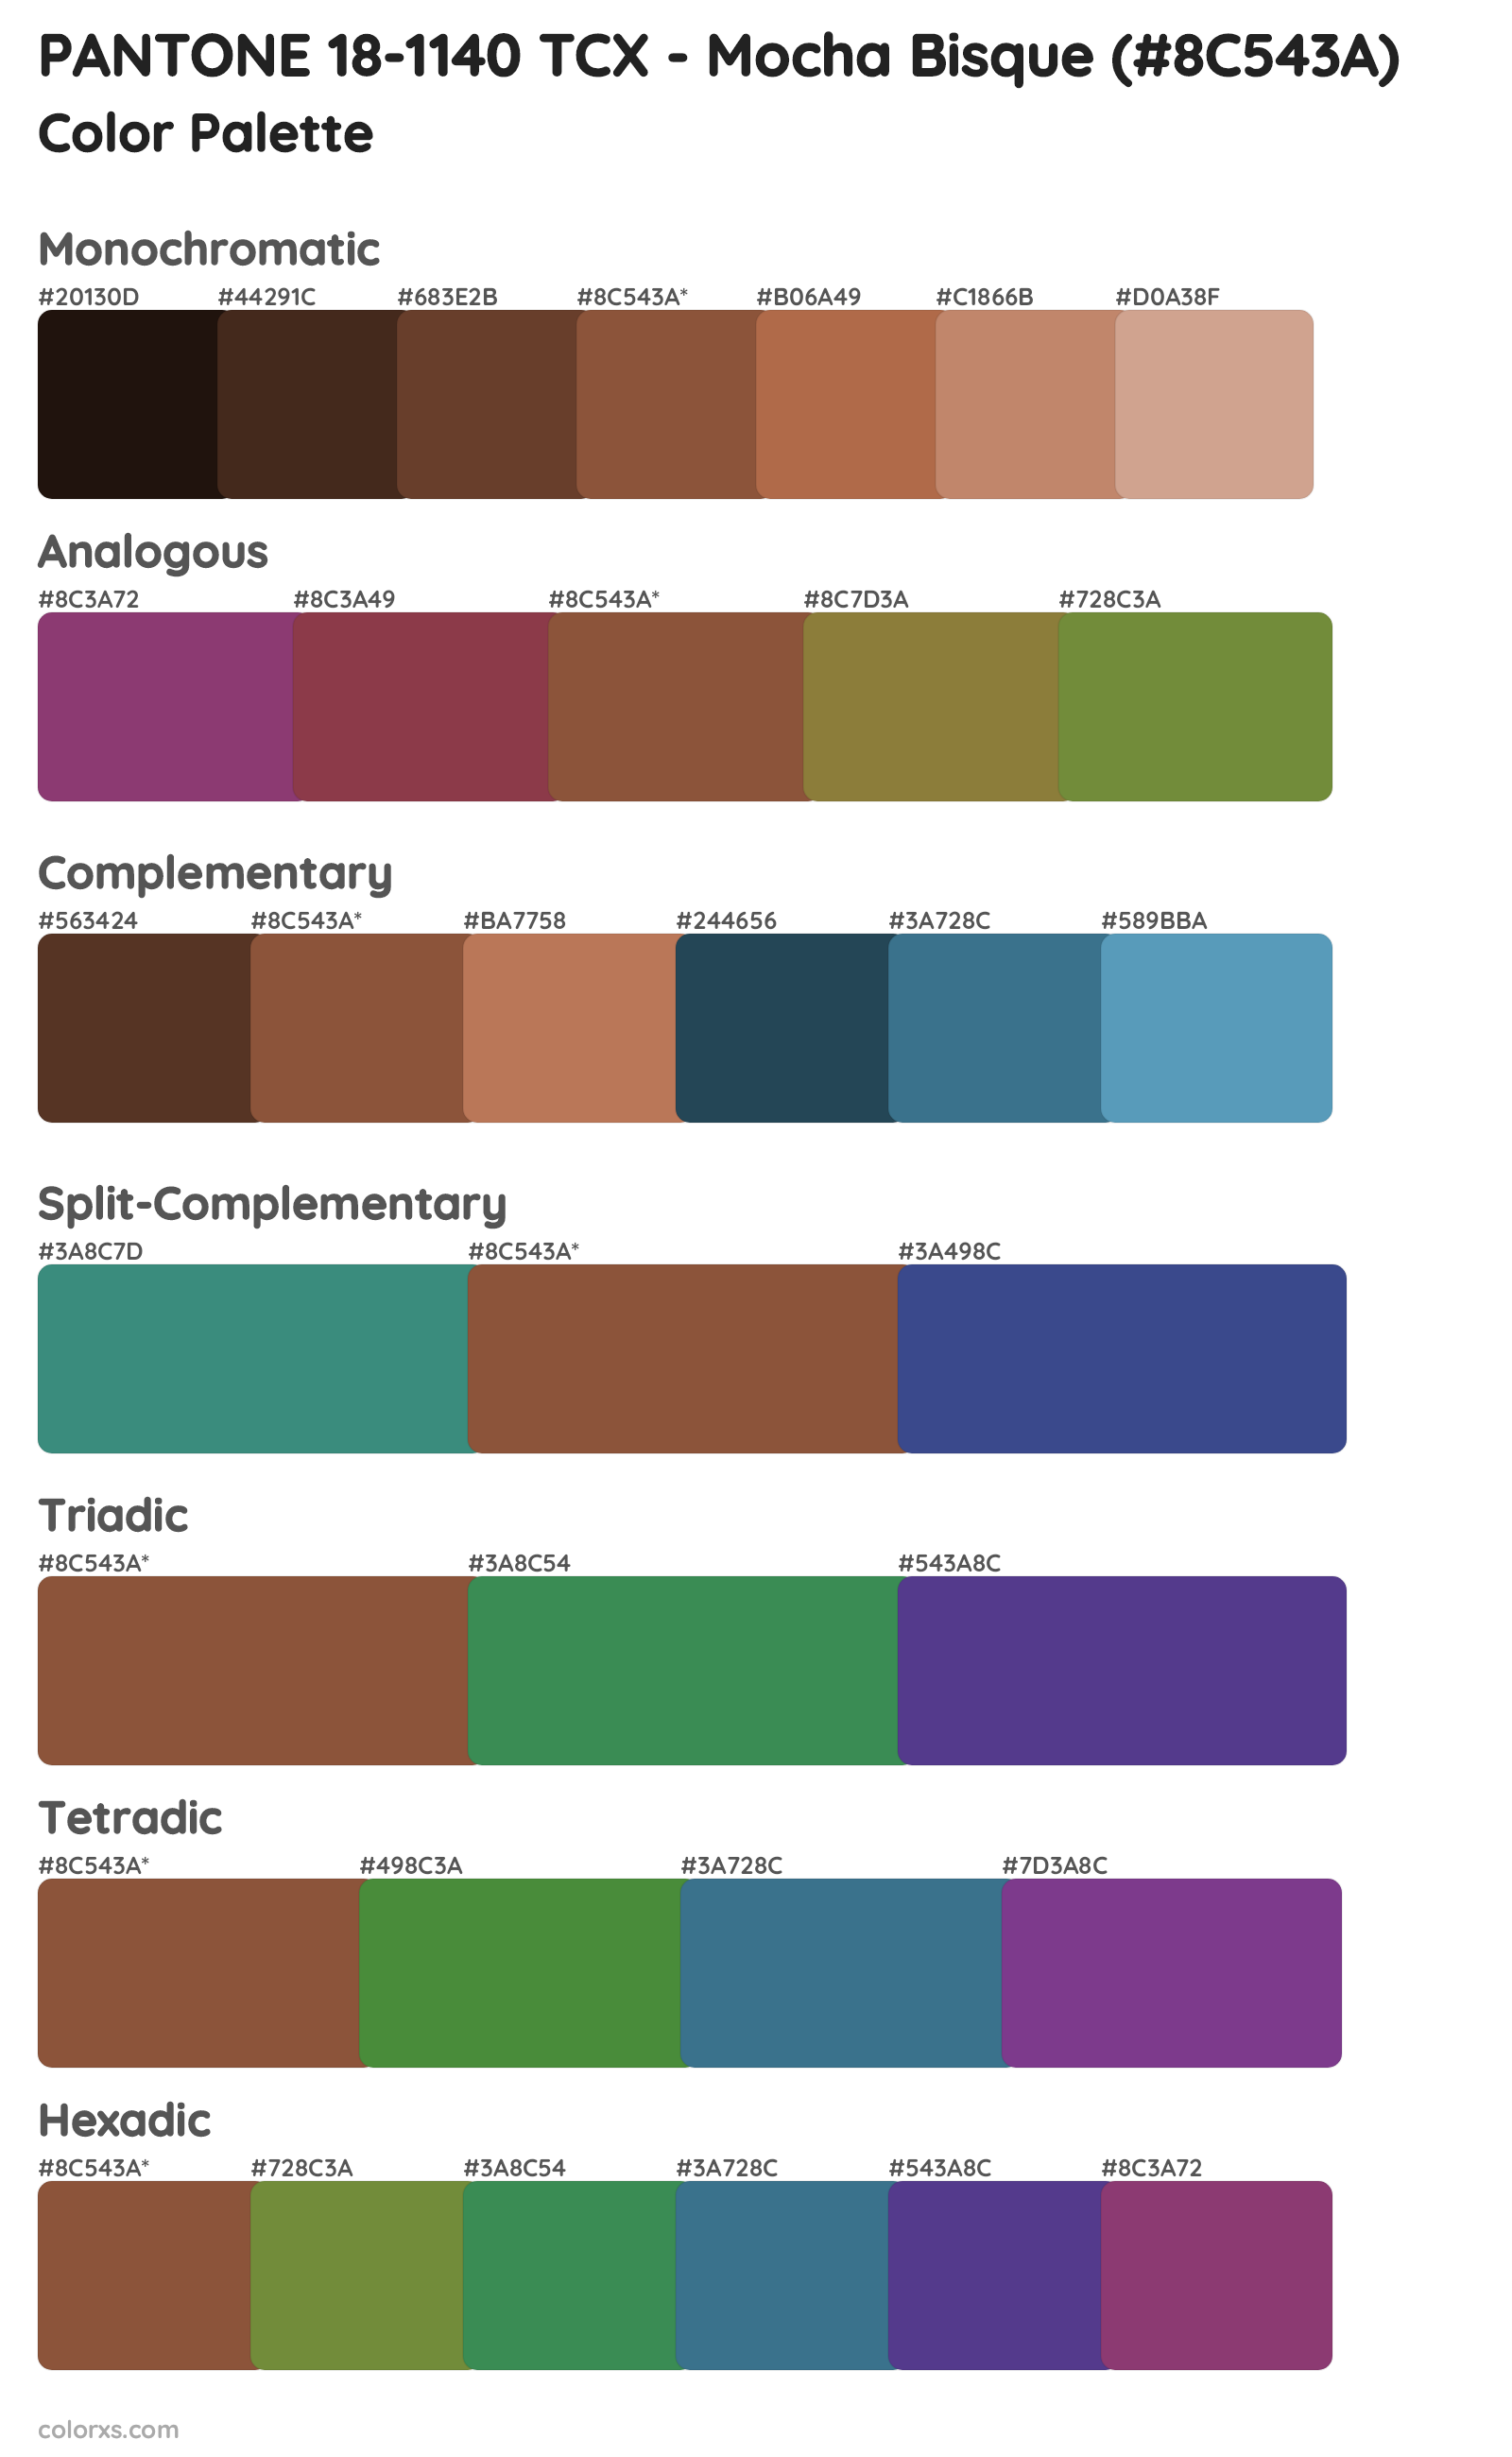 PANTONE 18-1140 TCX - Mocha Bisque Color Scheme Palettes